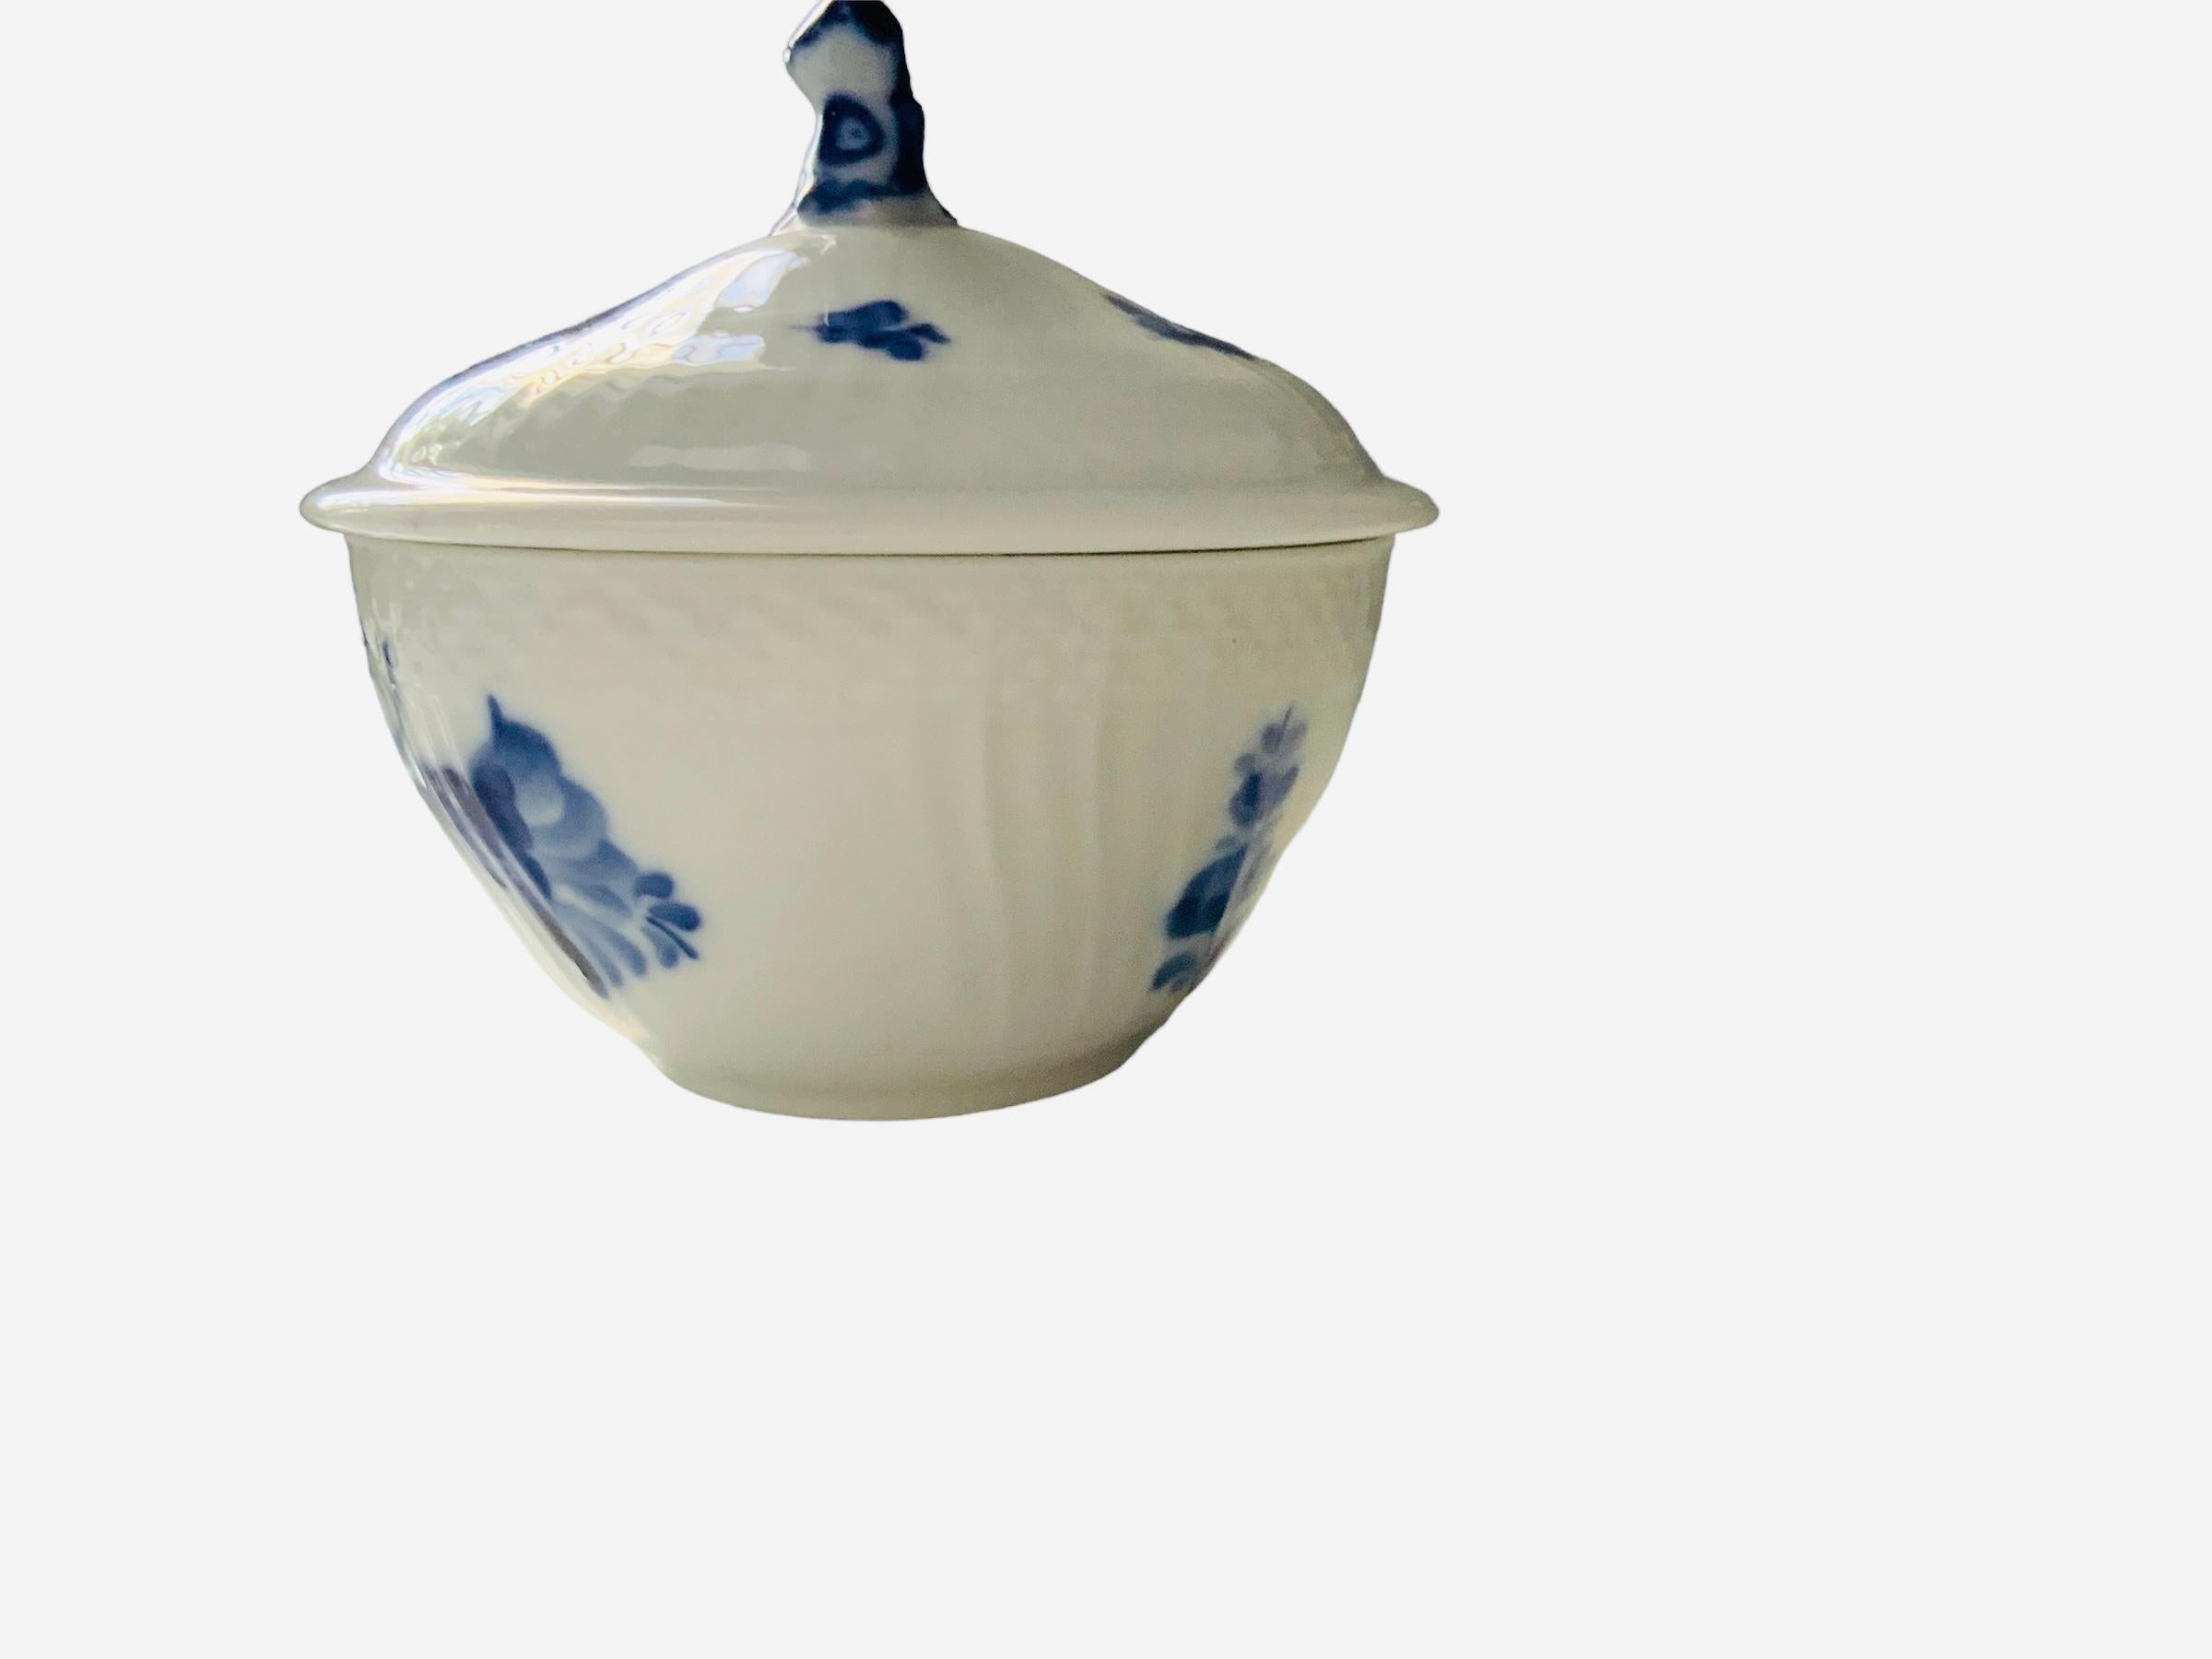 Il s'agit d'un sucrier en porcelaine de Royal Copenhagen avec couvercle. Il a un fond blanc et est peint à la main avec un bouquet de fleurs bleues au centre et des branches simples autour du corps et du couvercle. La bordure extérieure de la